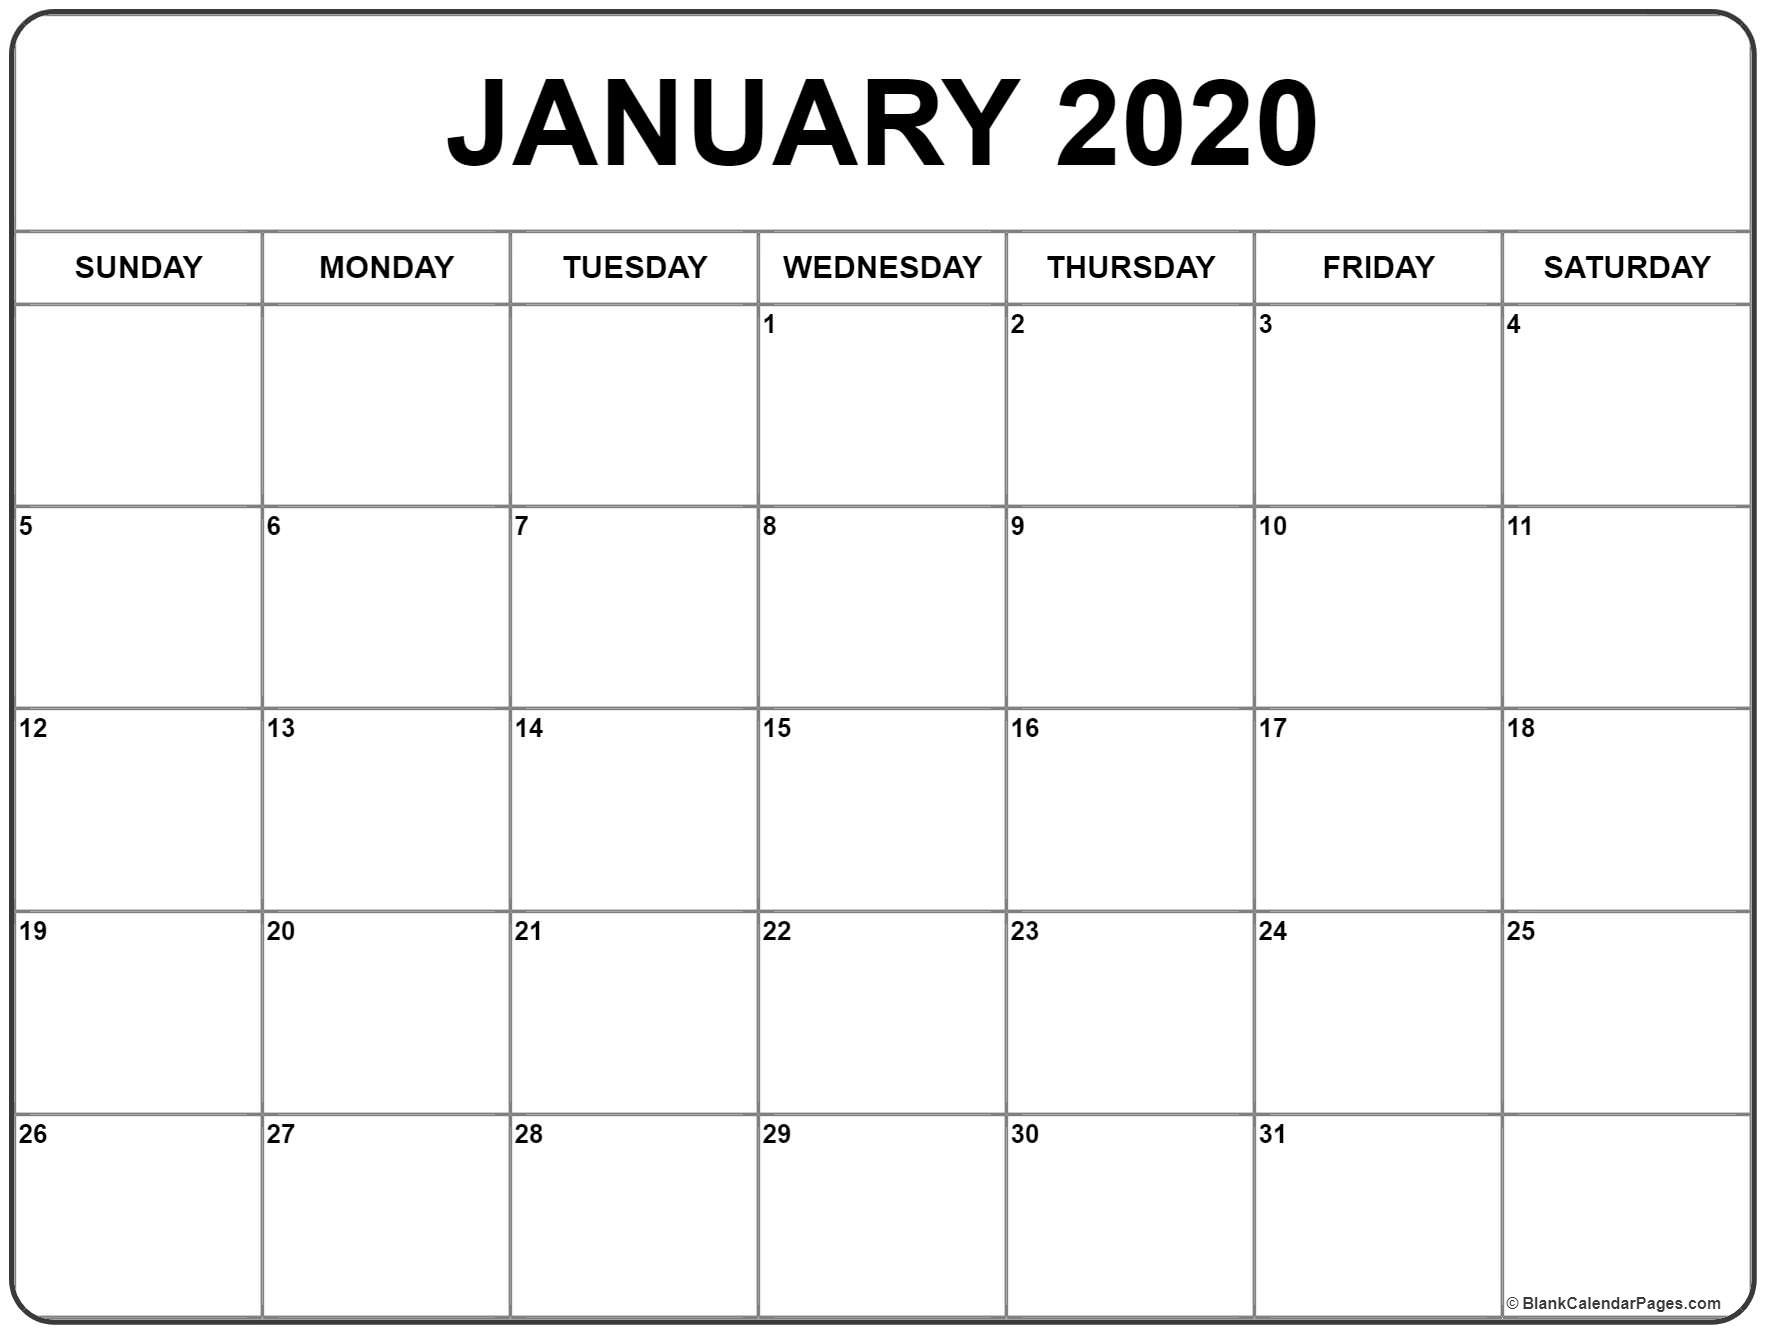 january-2020-calendar-printable-qualads